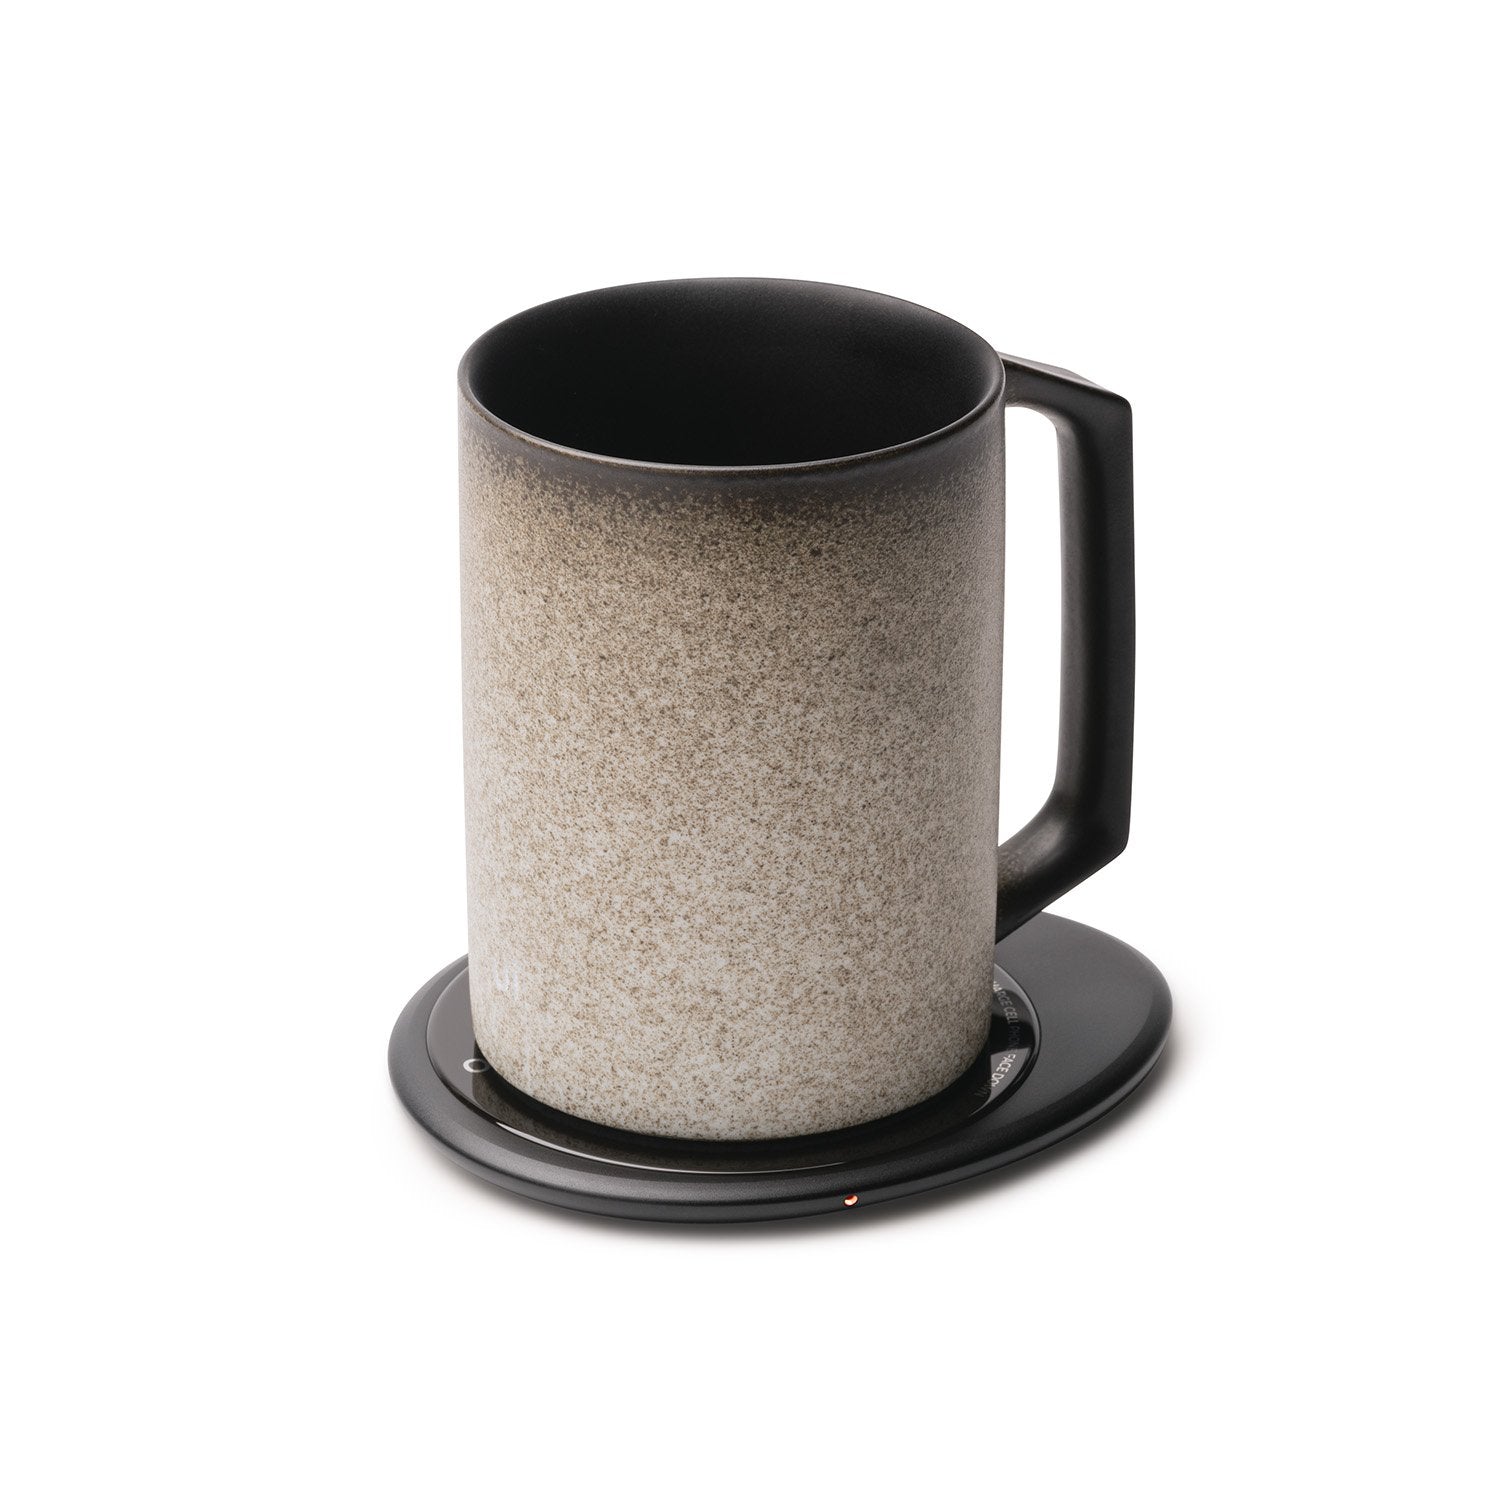 Stone textured mug on black pebble heating pad